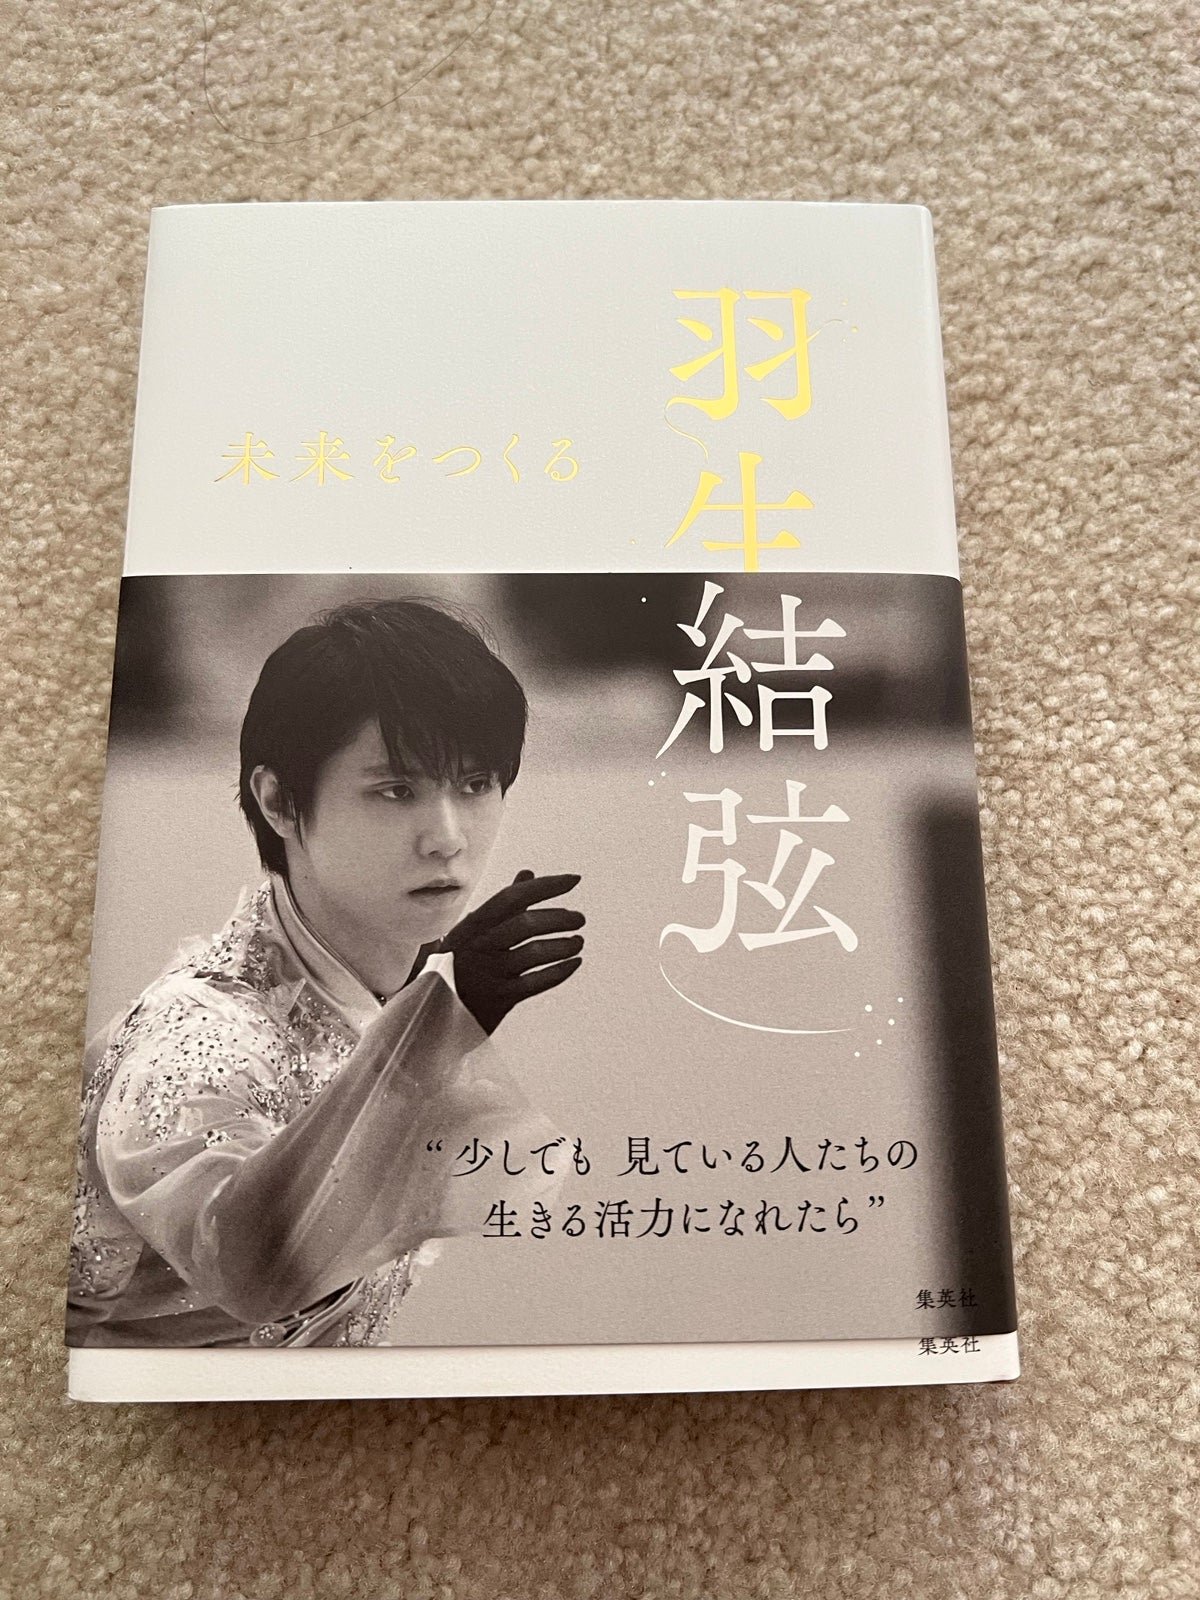 Hanyu Yuzuru Book k18f2QyGY